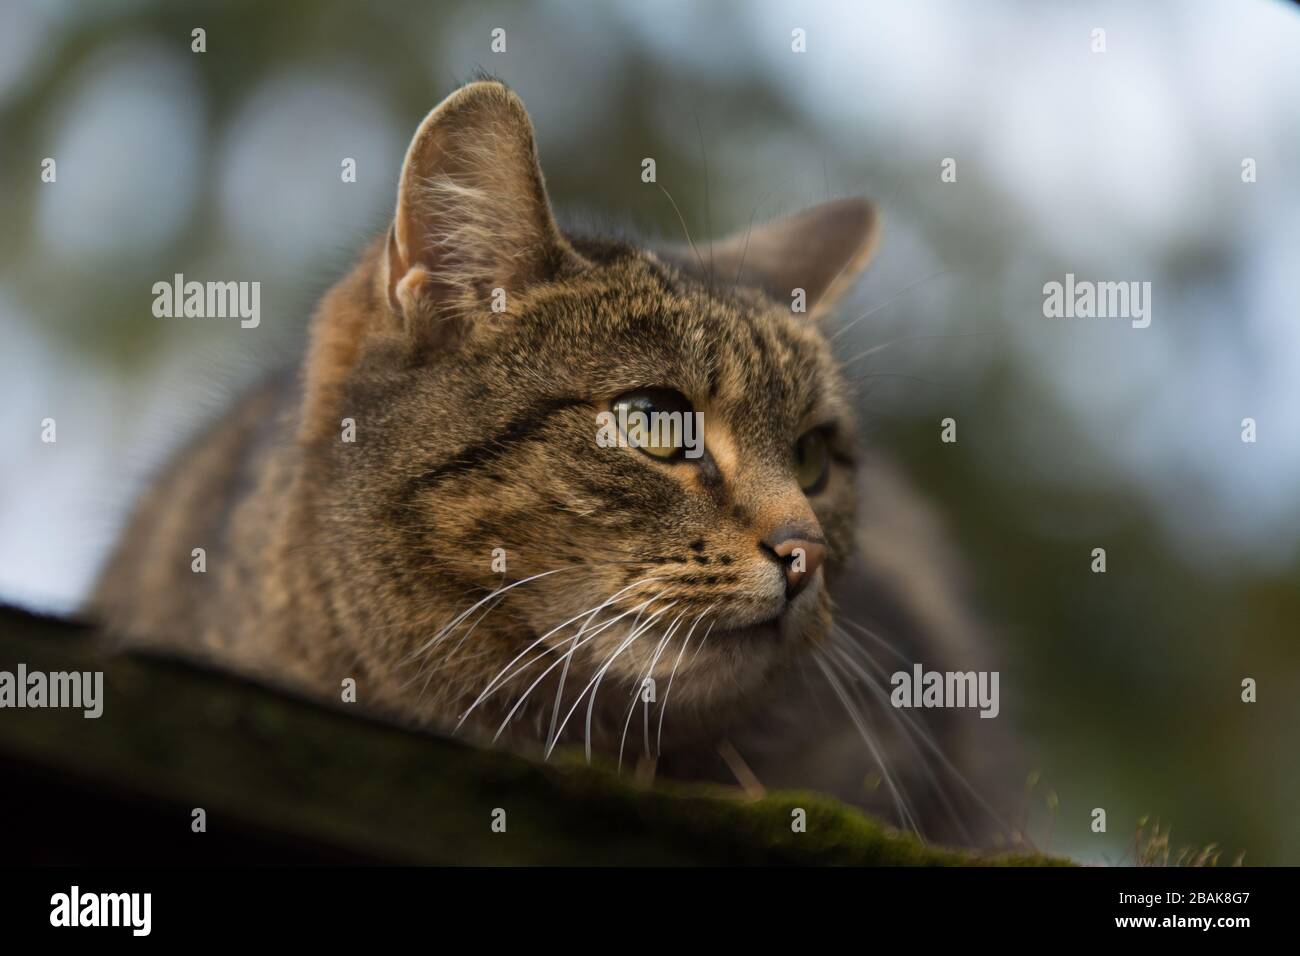 Nahaufnahme einer besprühten Tabby-Katze mit einer Einschnittnarbe auf dem Ohr, die etwas beobachtet Stockfoto